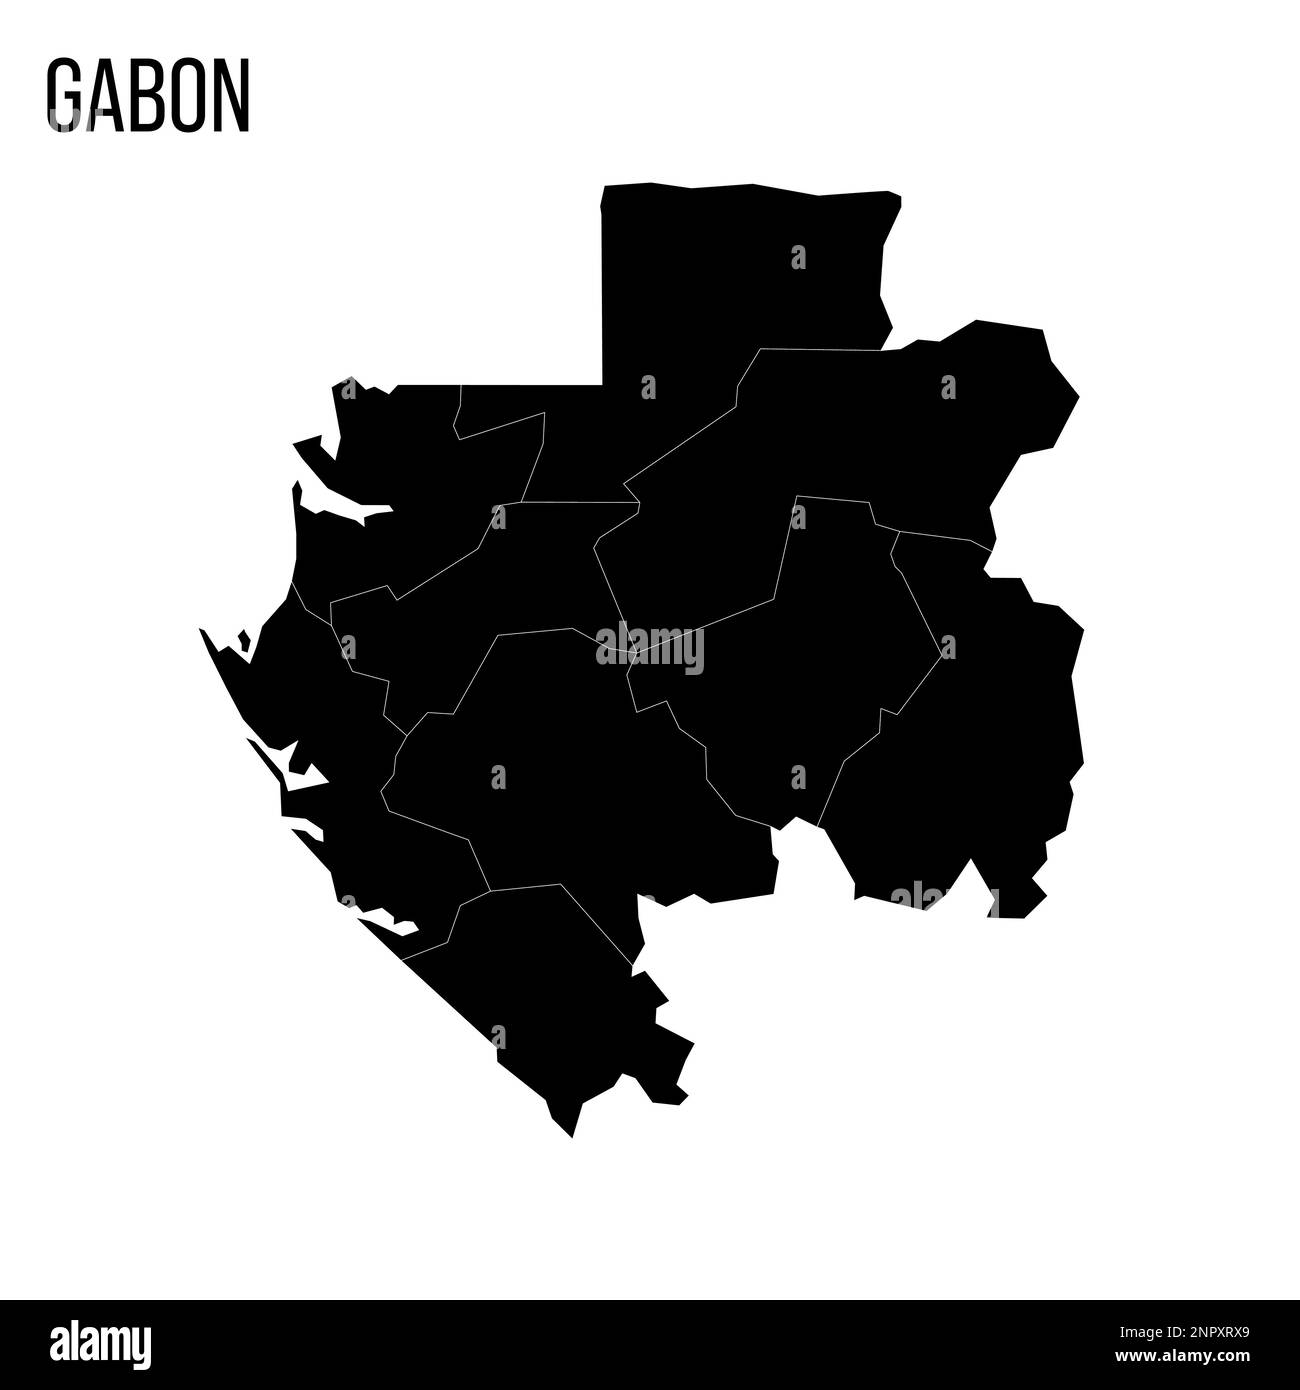 Gabun politische Karte der Verwaltungsabteilungen - Provinzen. Leere schwarze Karte und Name des Landes. Stock Vektor